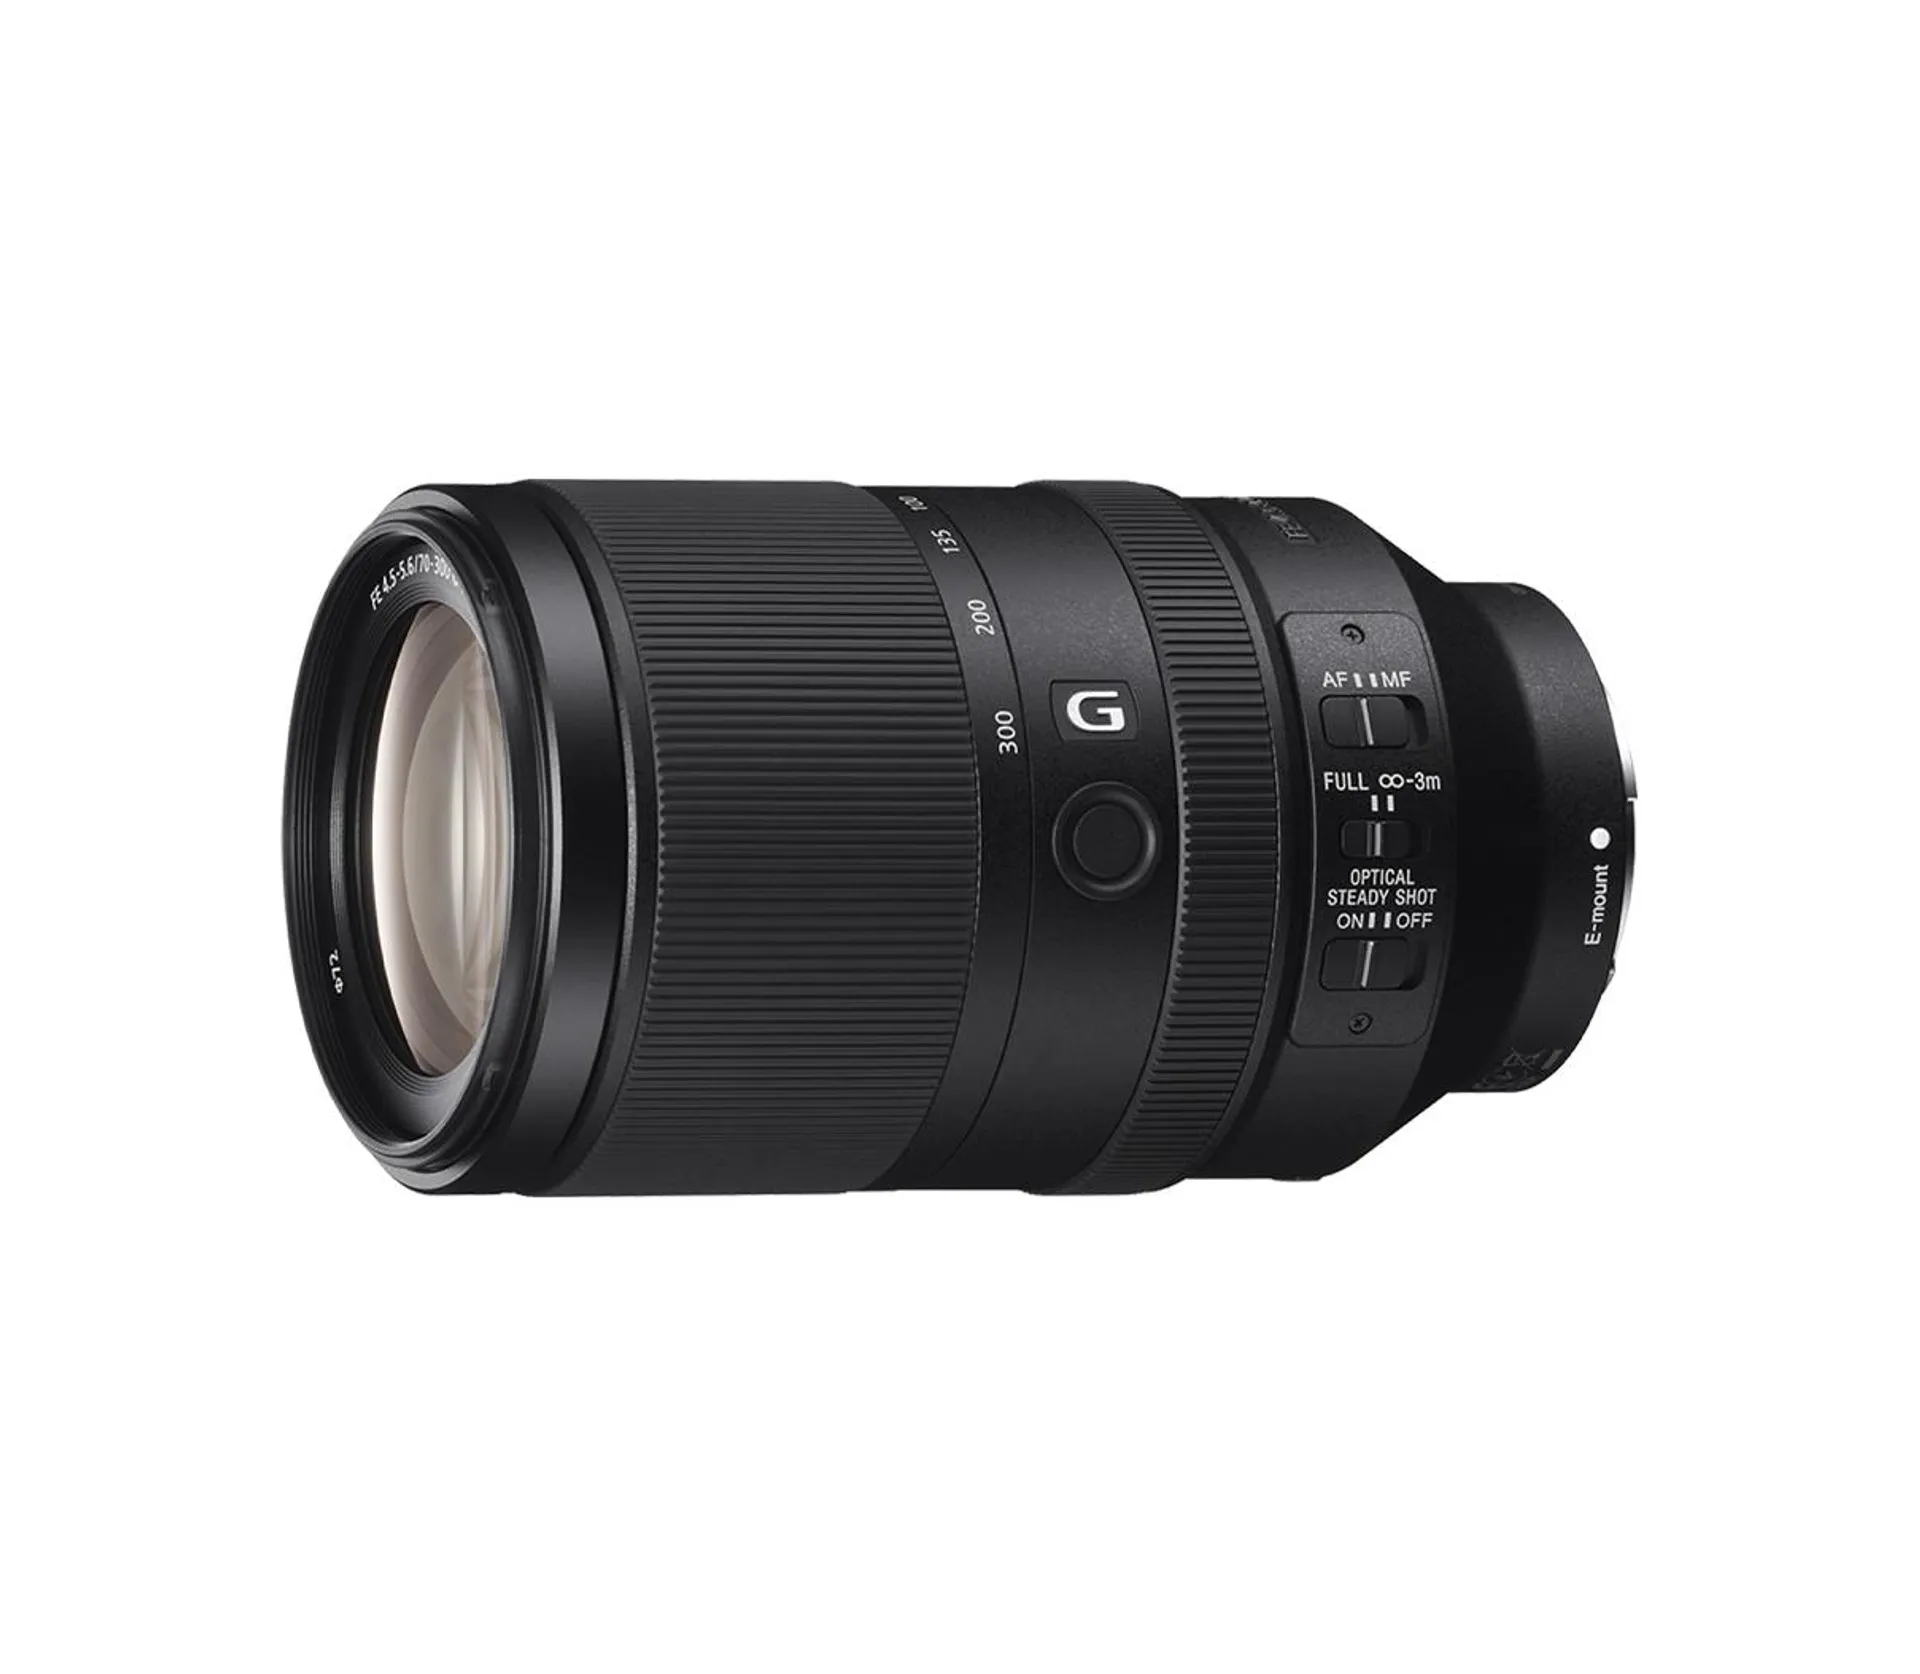 FE 70-300mm F4.5-5.6 G OSS Full-frame Telephoto Zoom G Lens with Optical SteadyShot